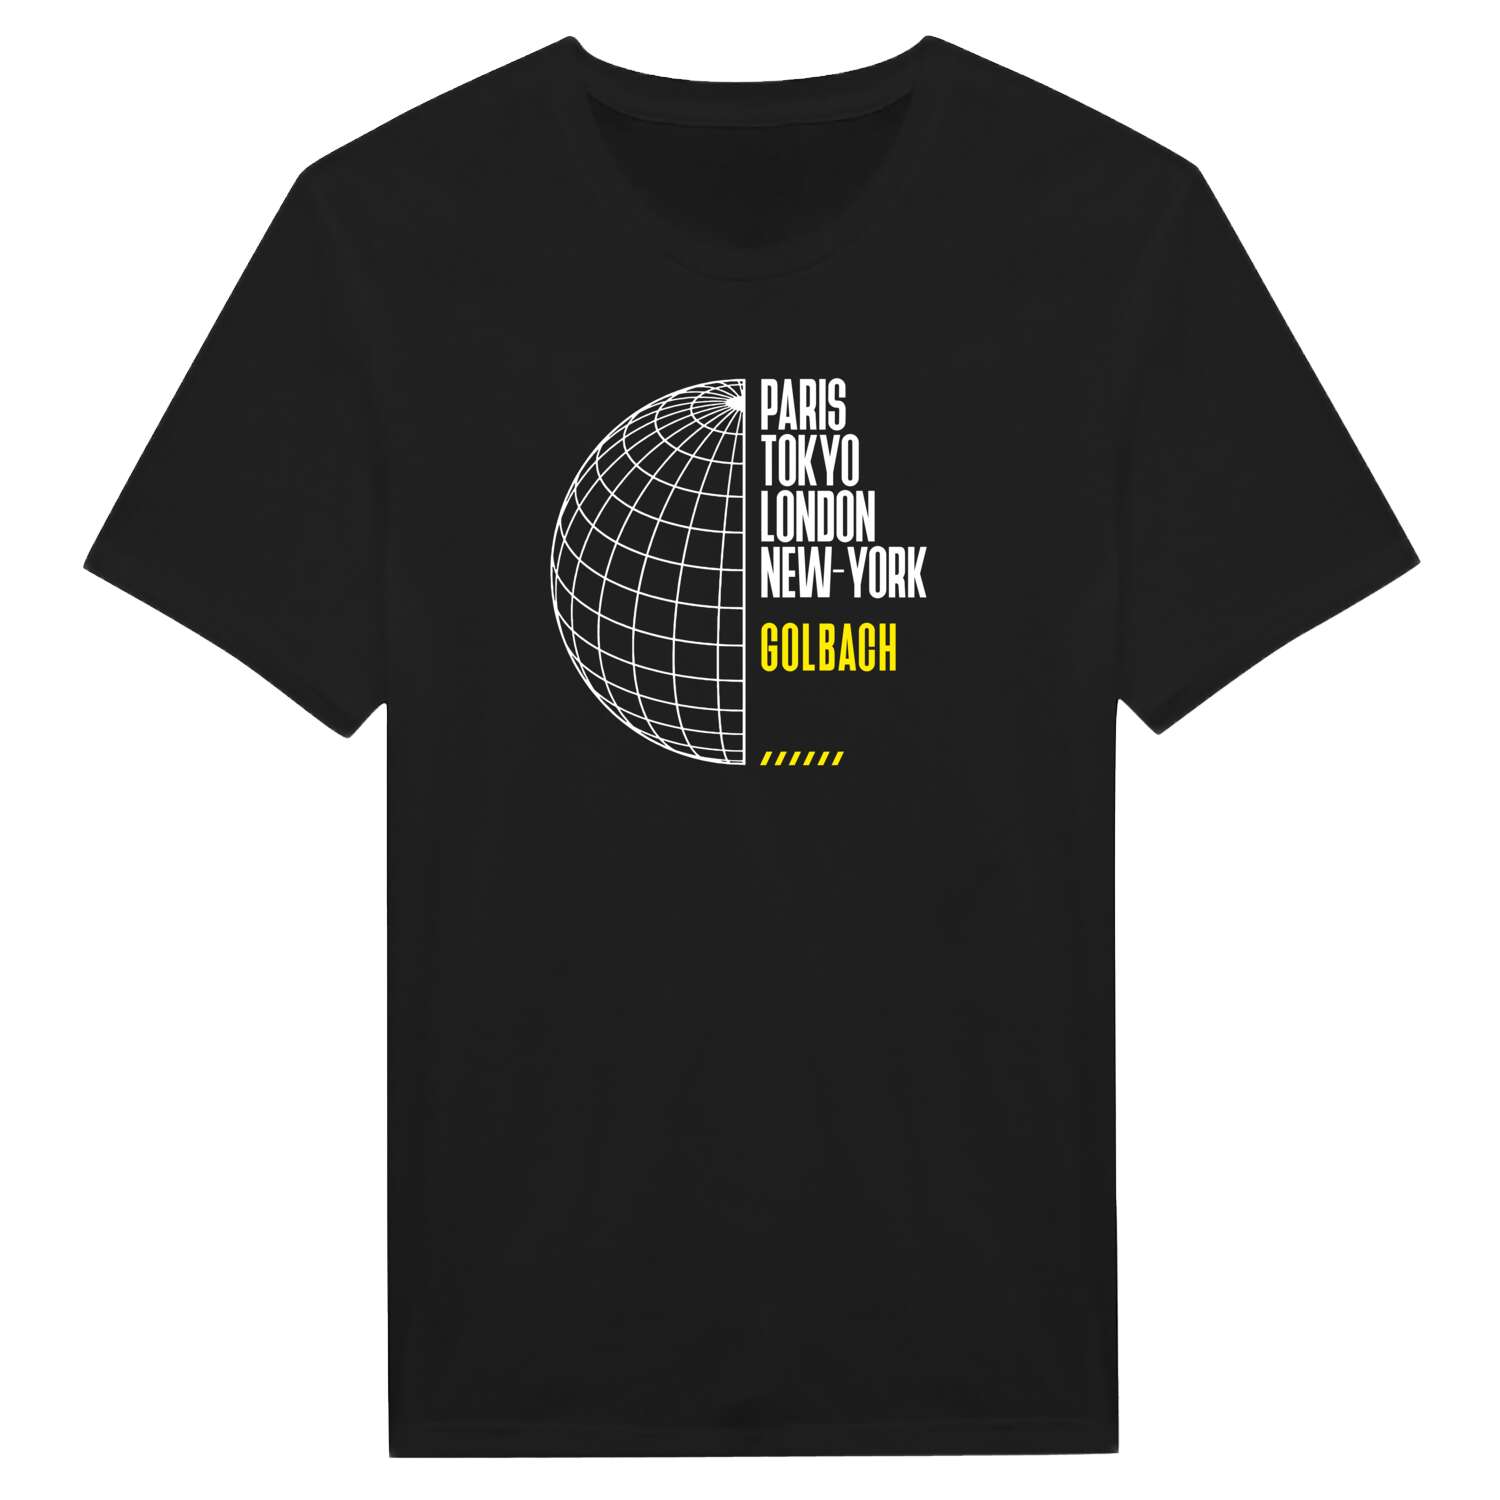 Golbach T-Shirt »Paris Tokyo London«